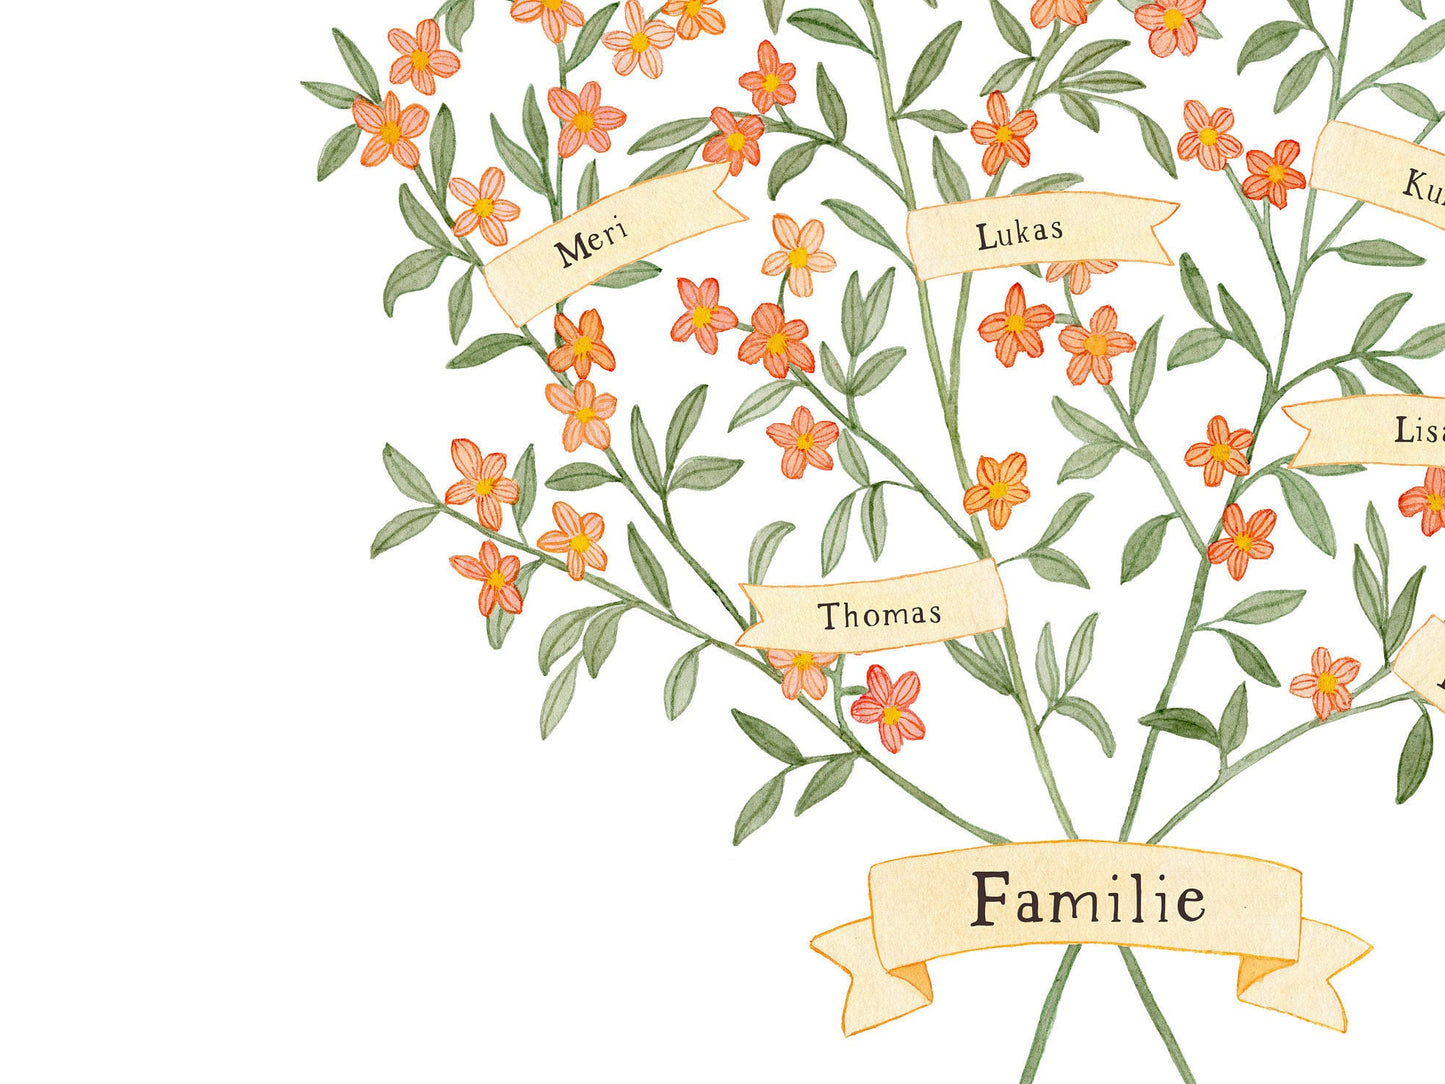 Familienbaum - Stammbaum mit Wimpeln